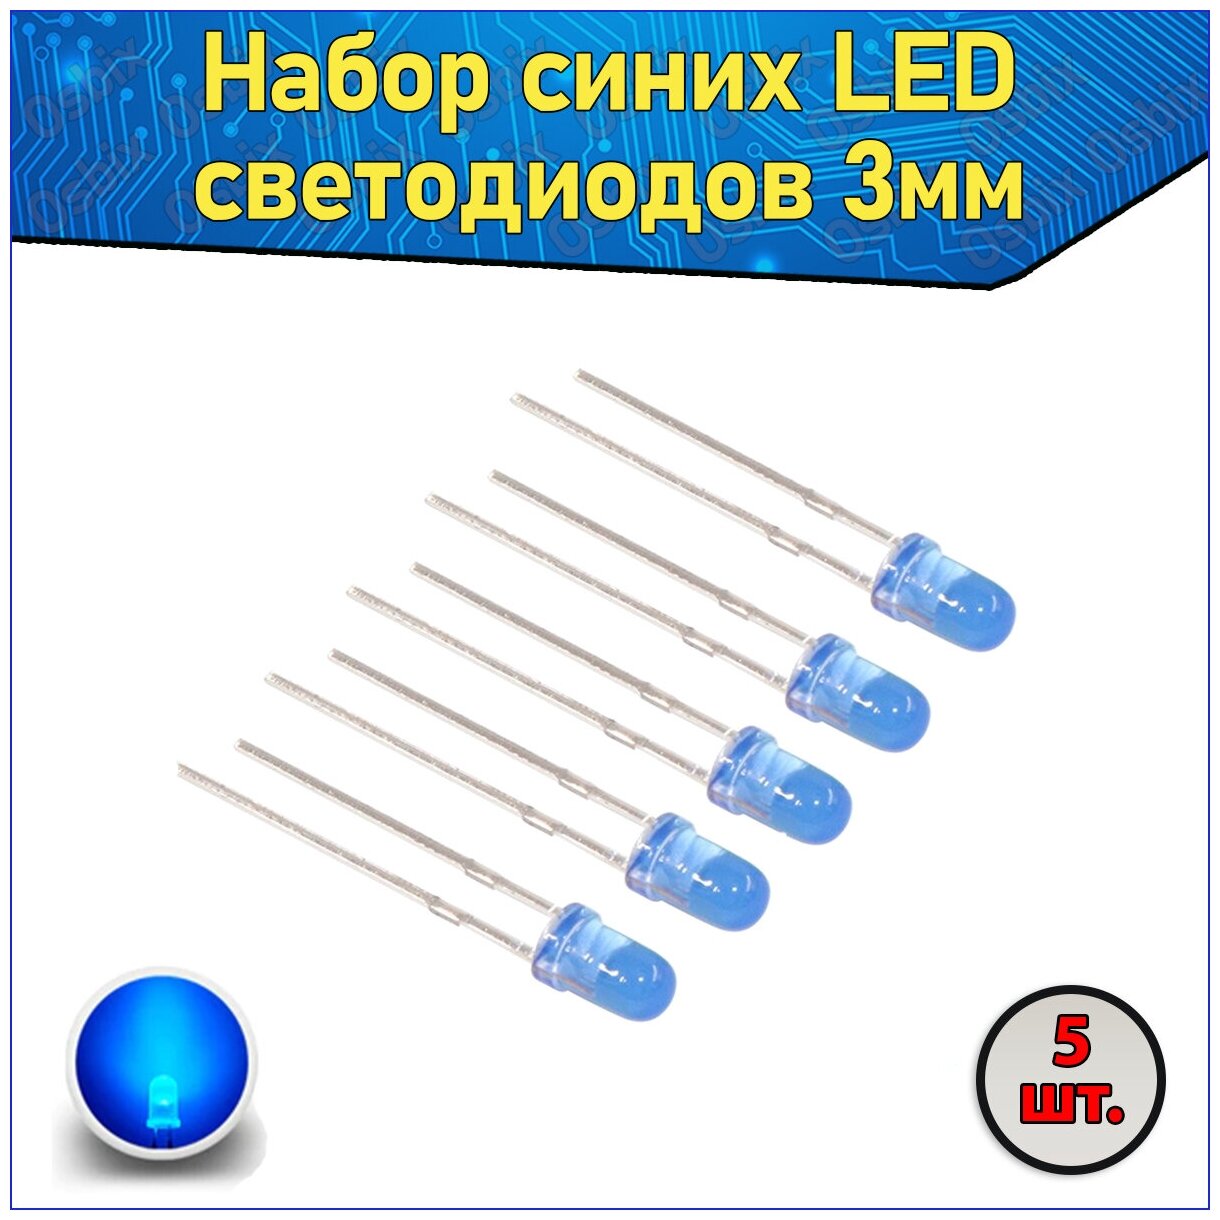 Набор синих LED светодиодов 3мм 5 шт. с короткими ножками & Комплект F3 LED diode